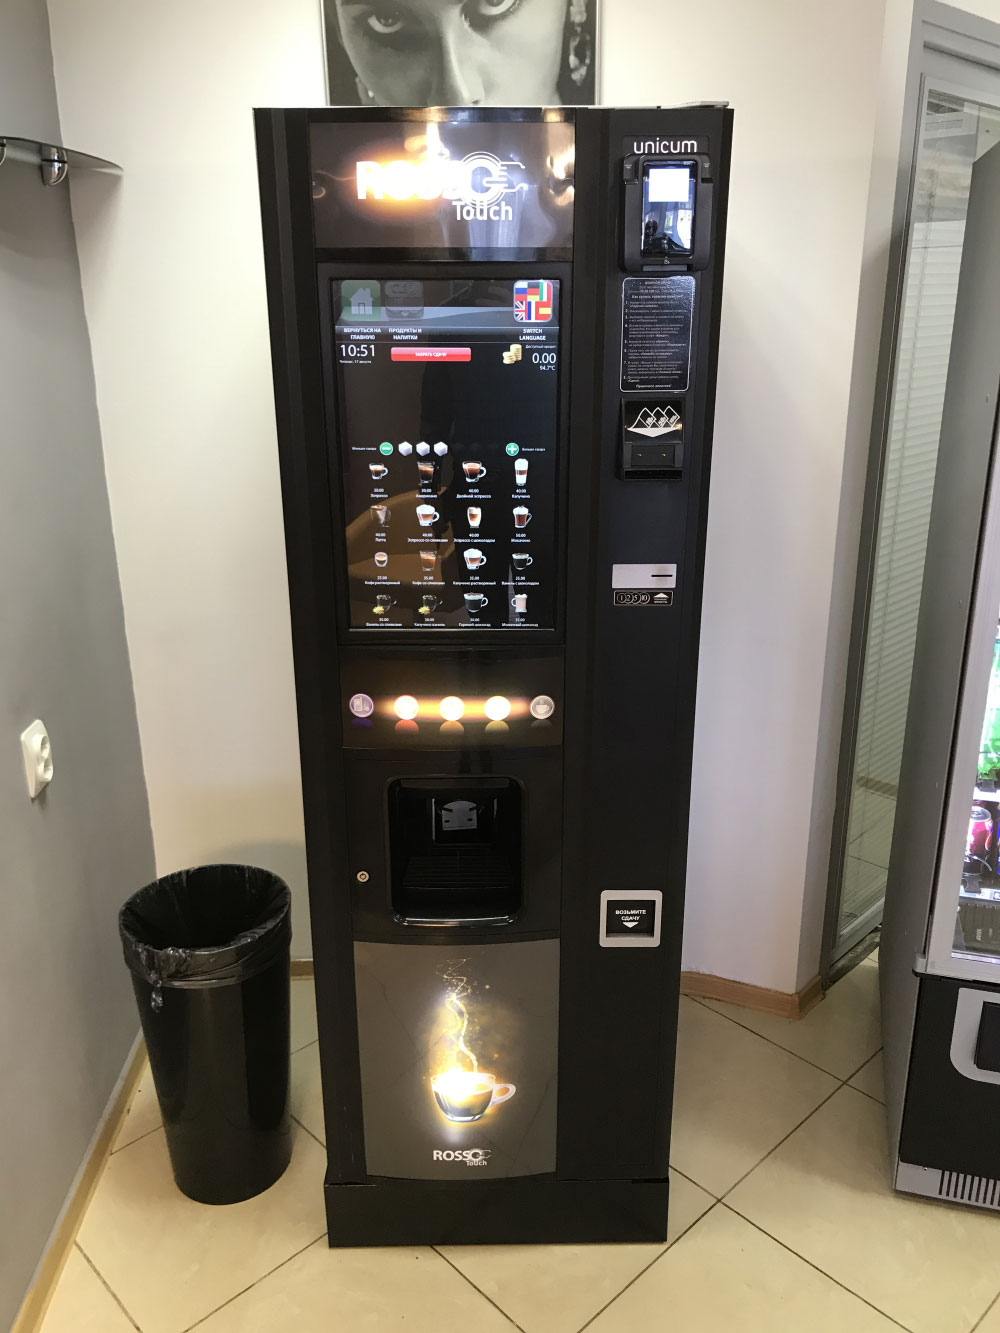 Купить кофе аппарат самообслуживания для бизнеса. Кофейный автомат Unicum Rosso. Кофе автомат Unicum Rosso Touch. Кофейный автомат Unicum Nova. Unicum вендинговый аппарат.